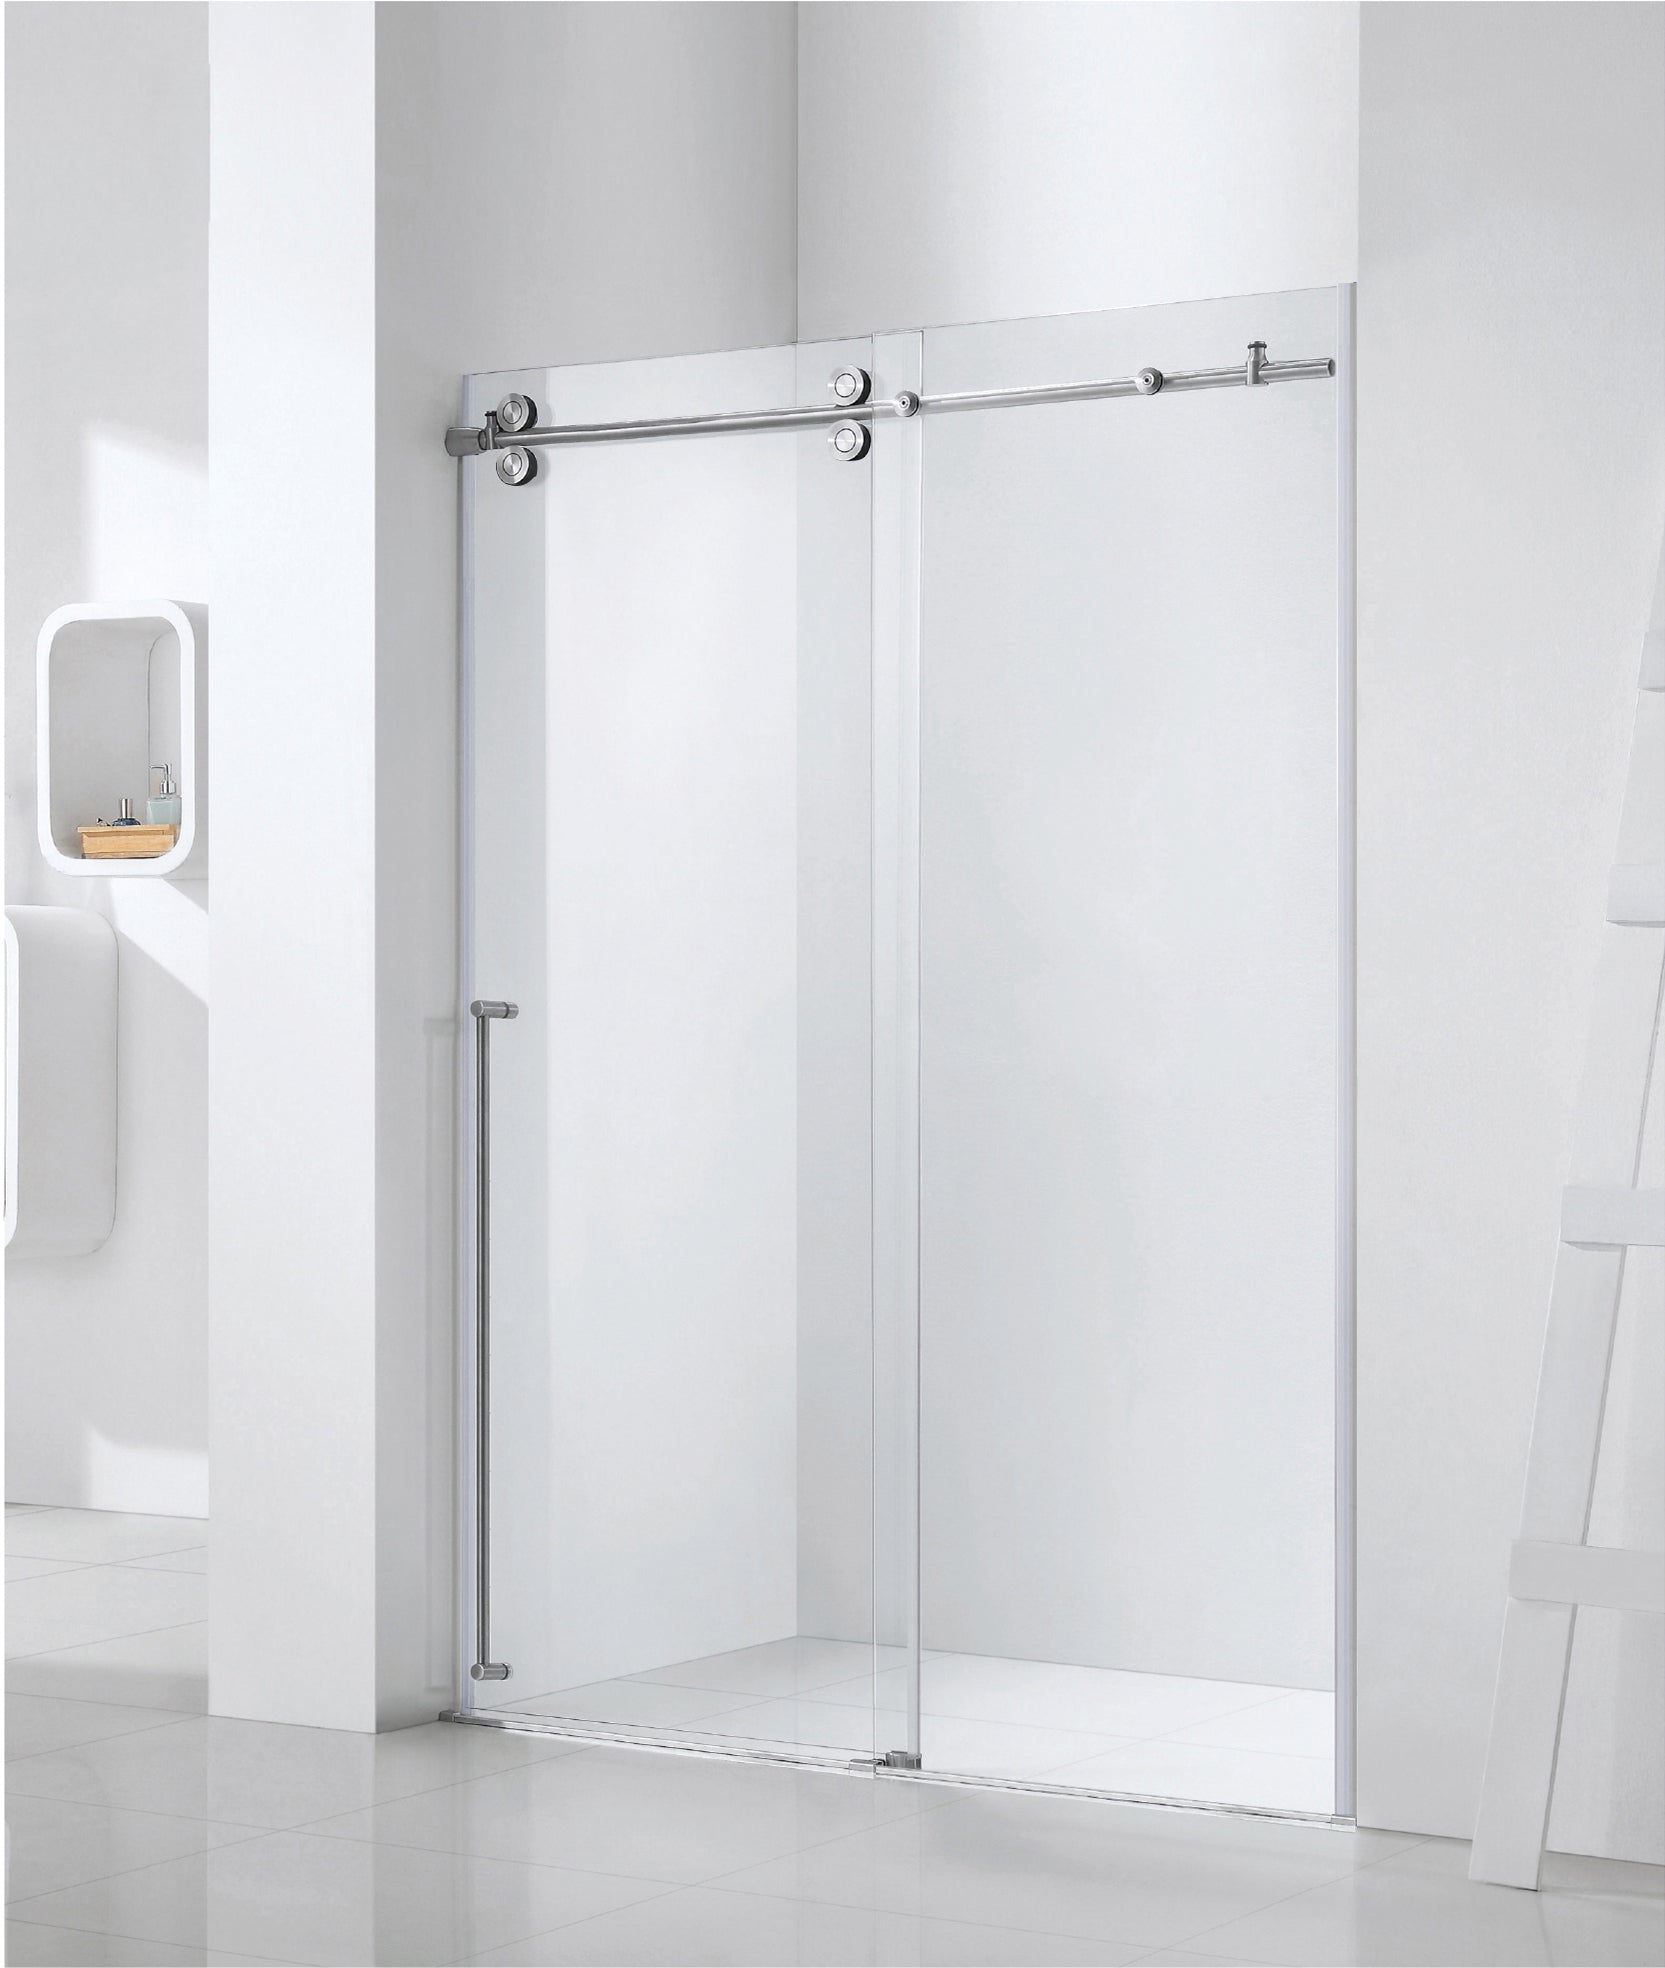 Shower Door(Soft Closing - Brushed Nickel)